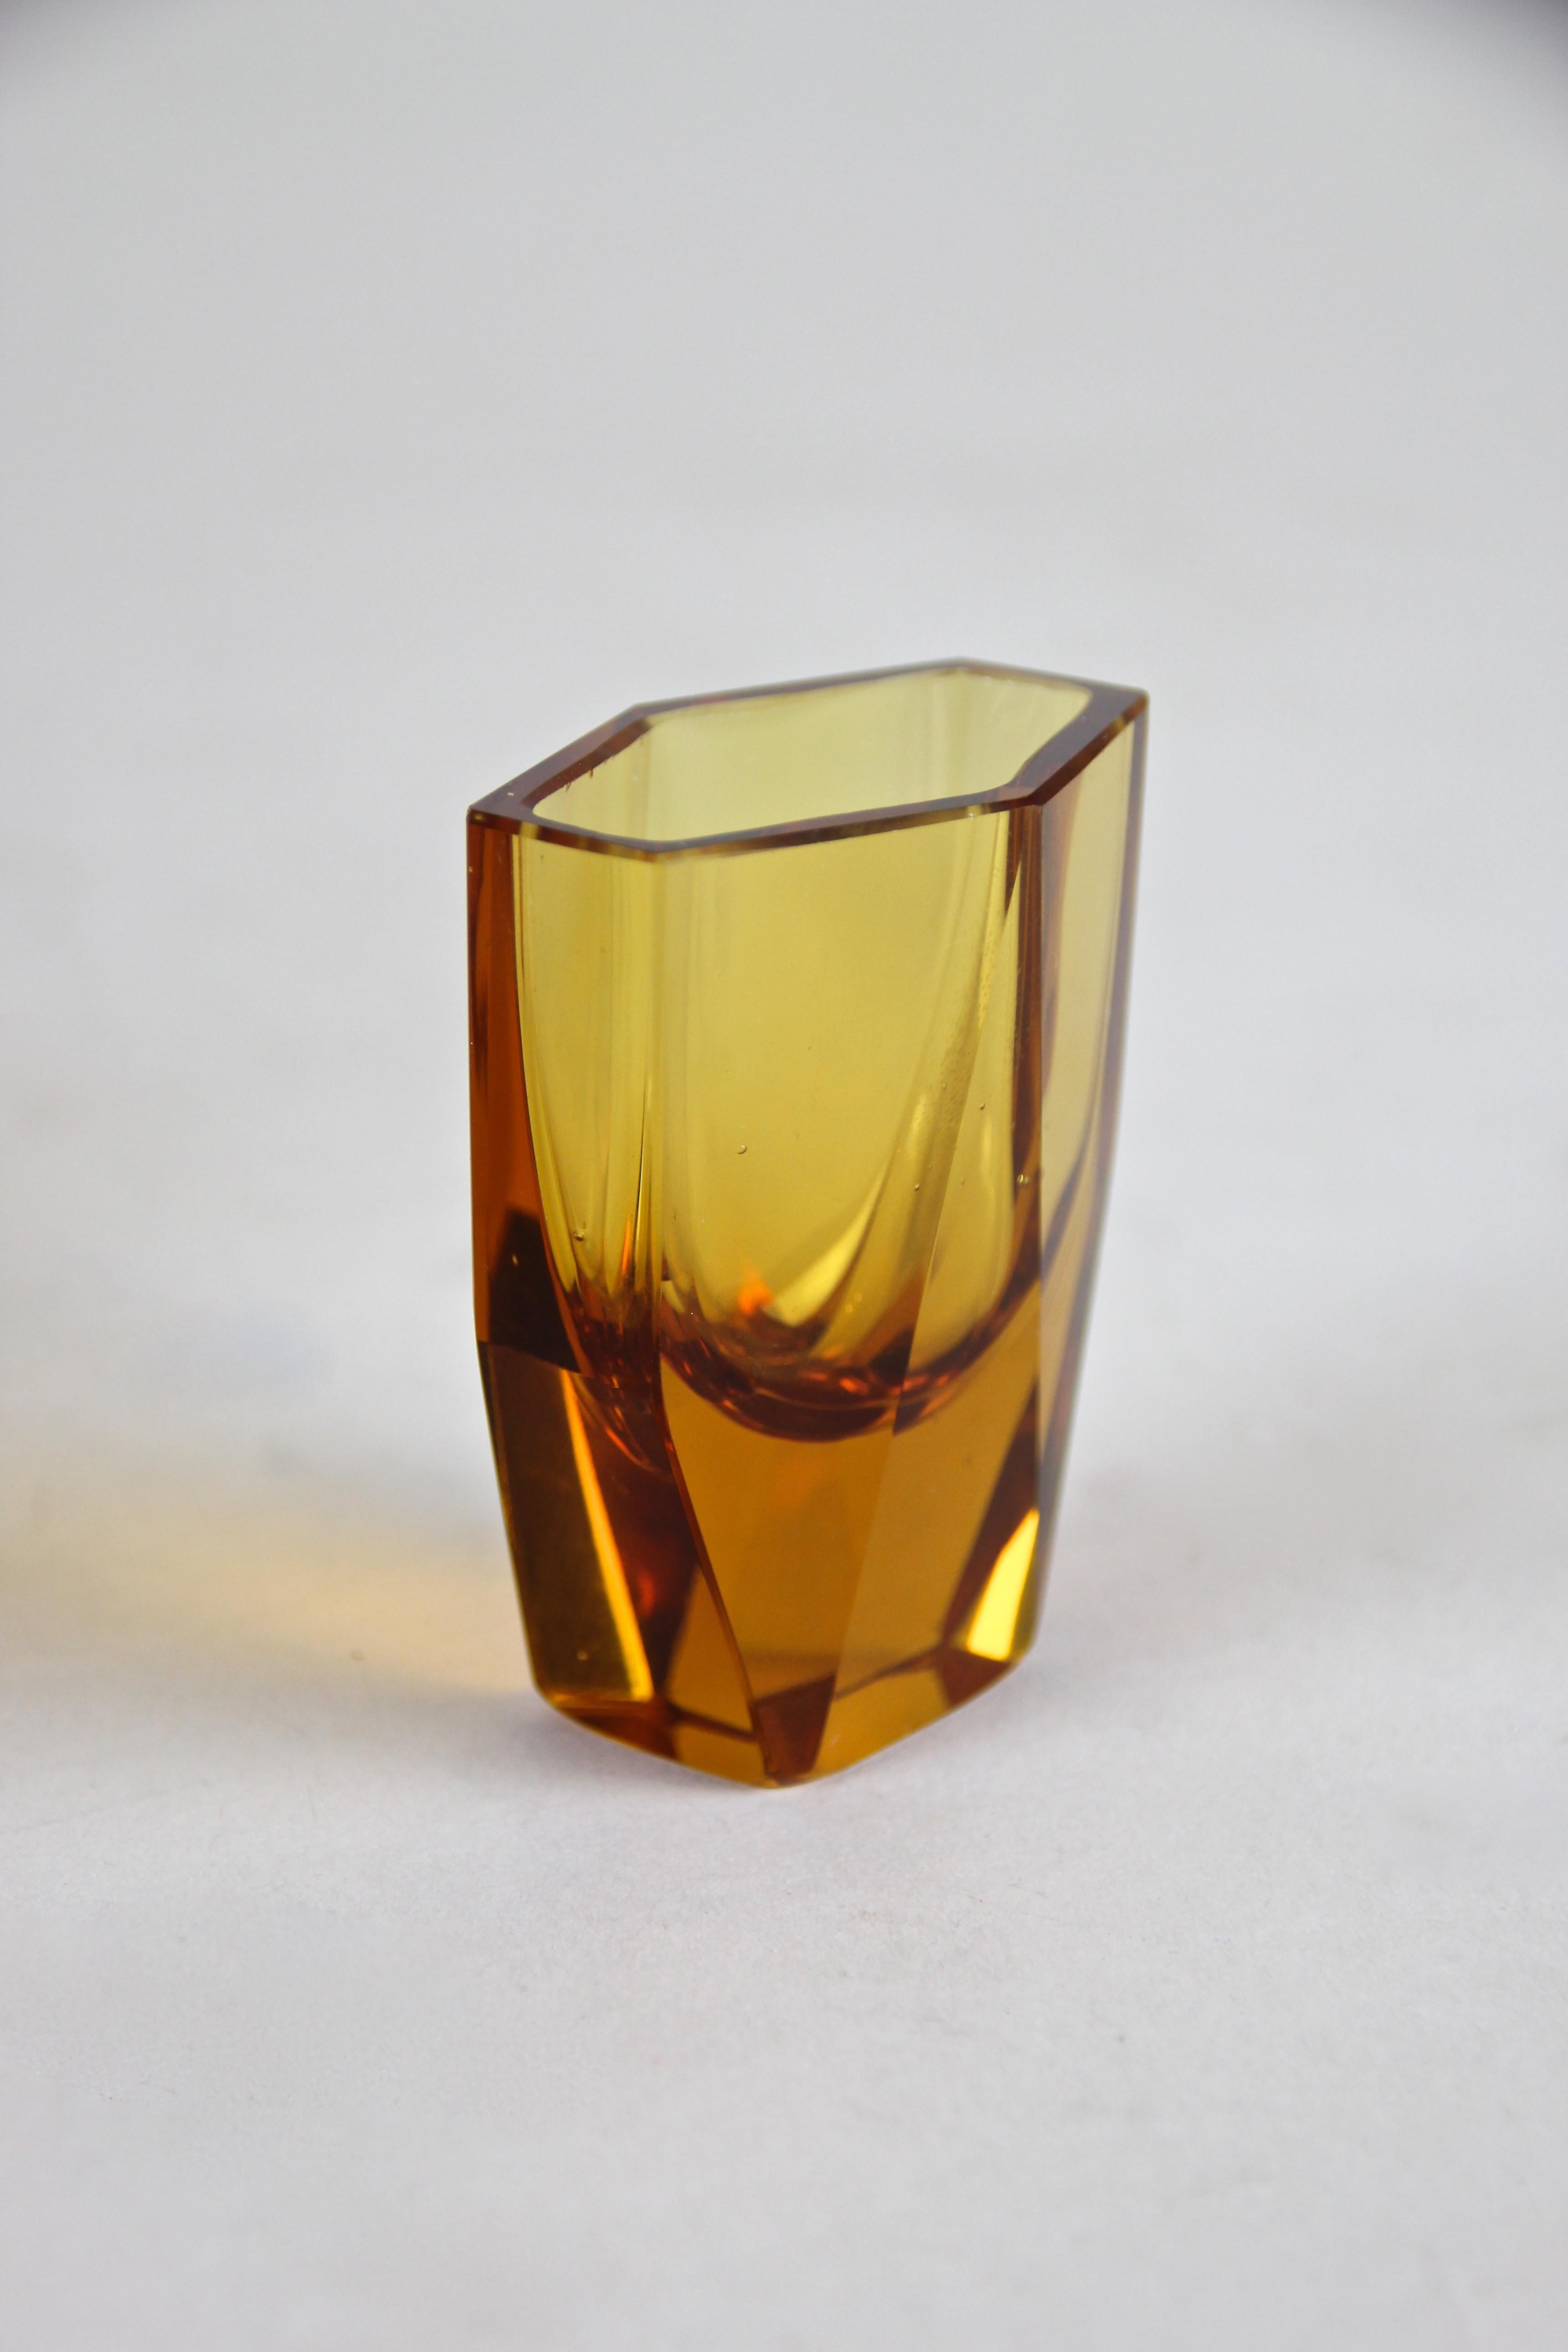 Czech Art Deco Design Glass Liquor Set Amber-Colored, CZ, circa 1925